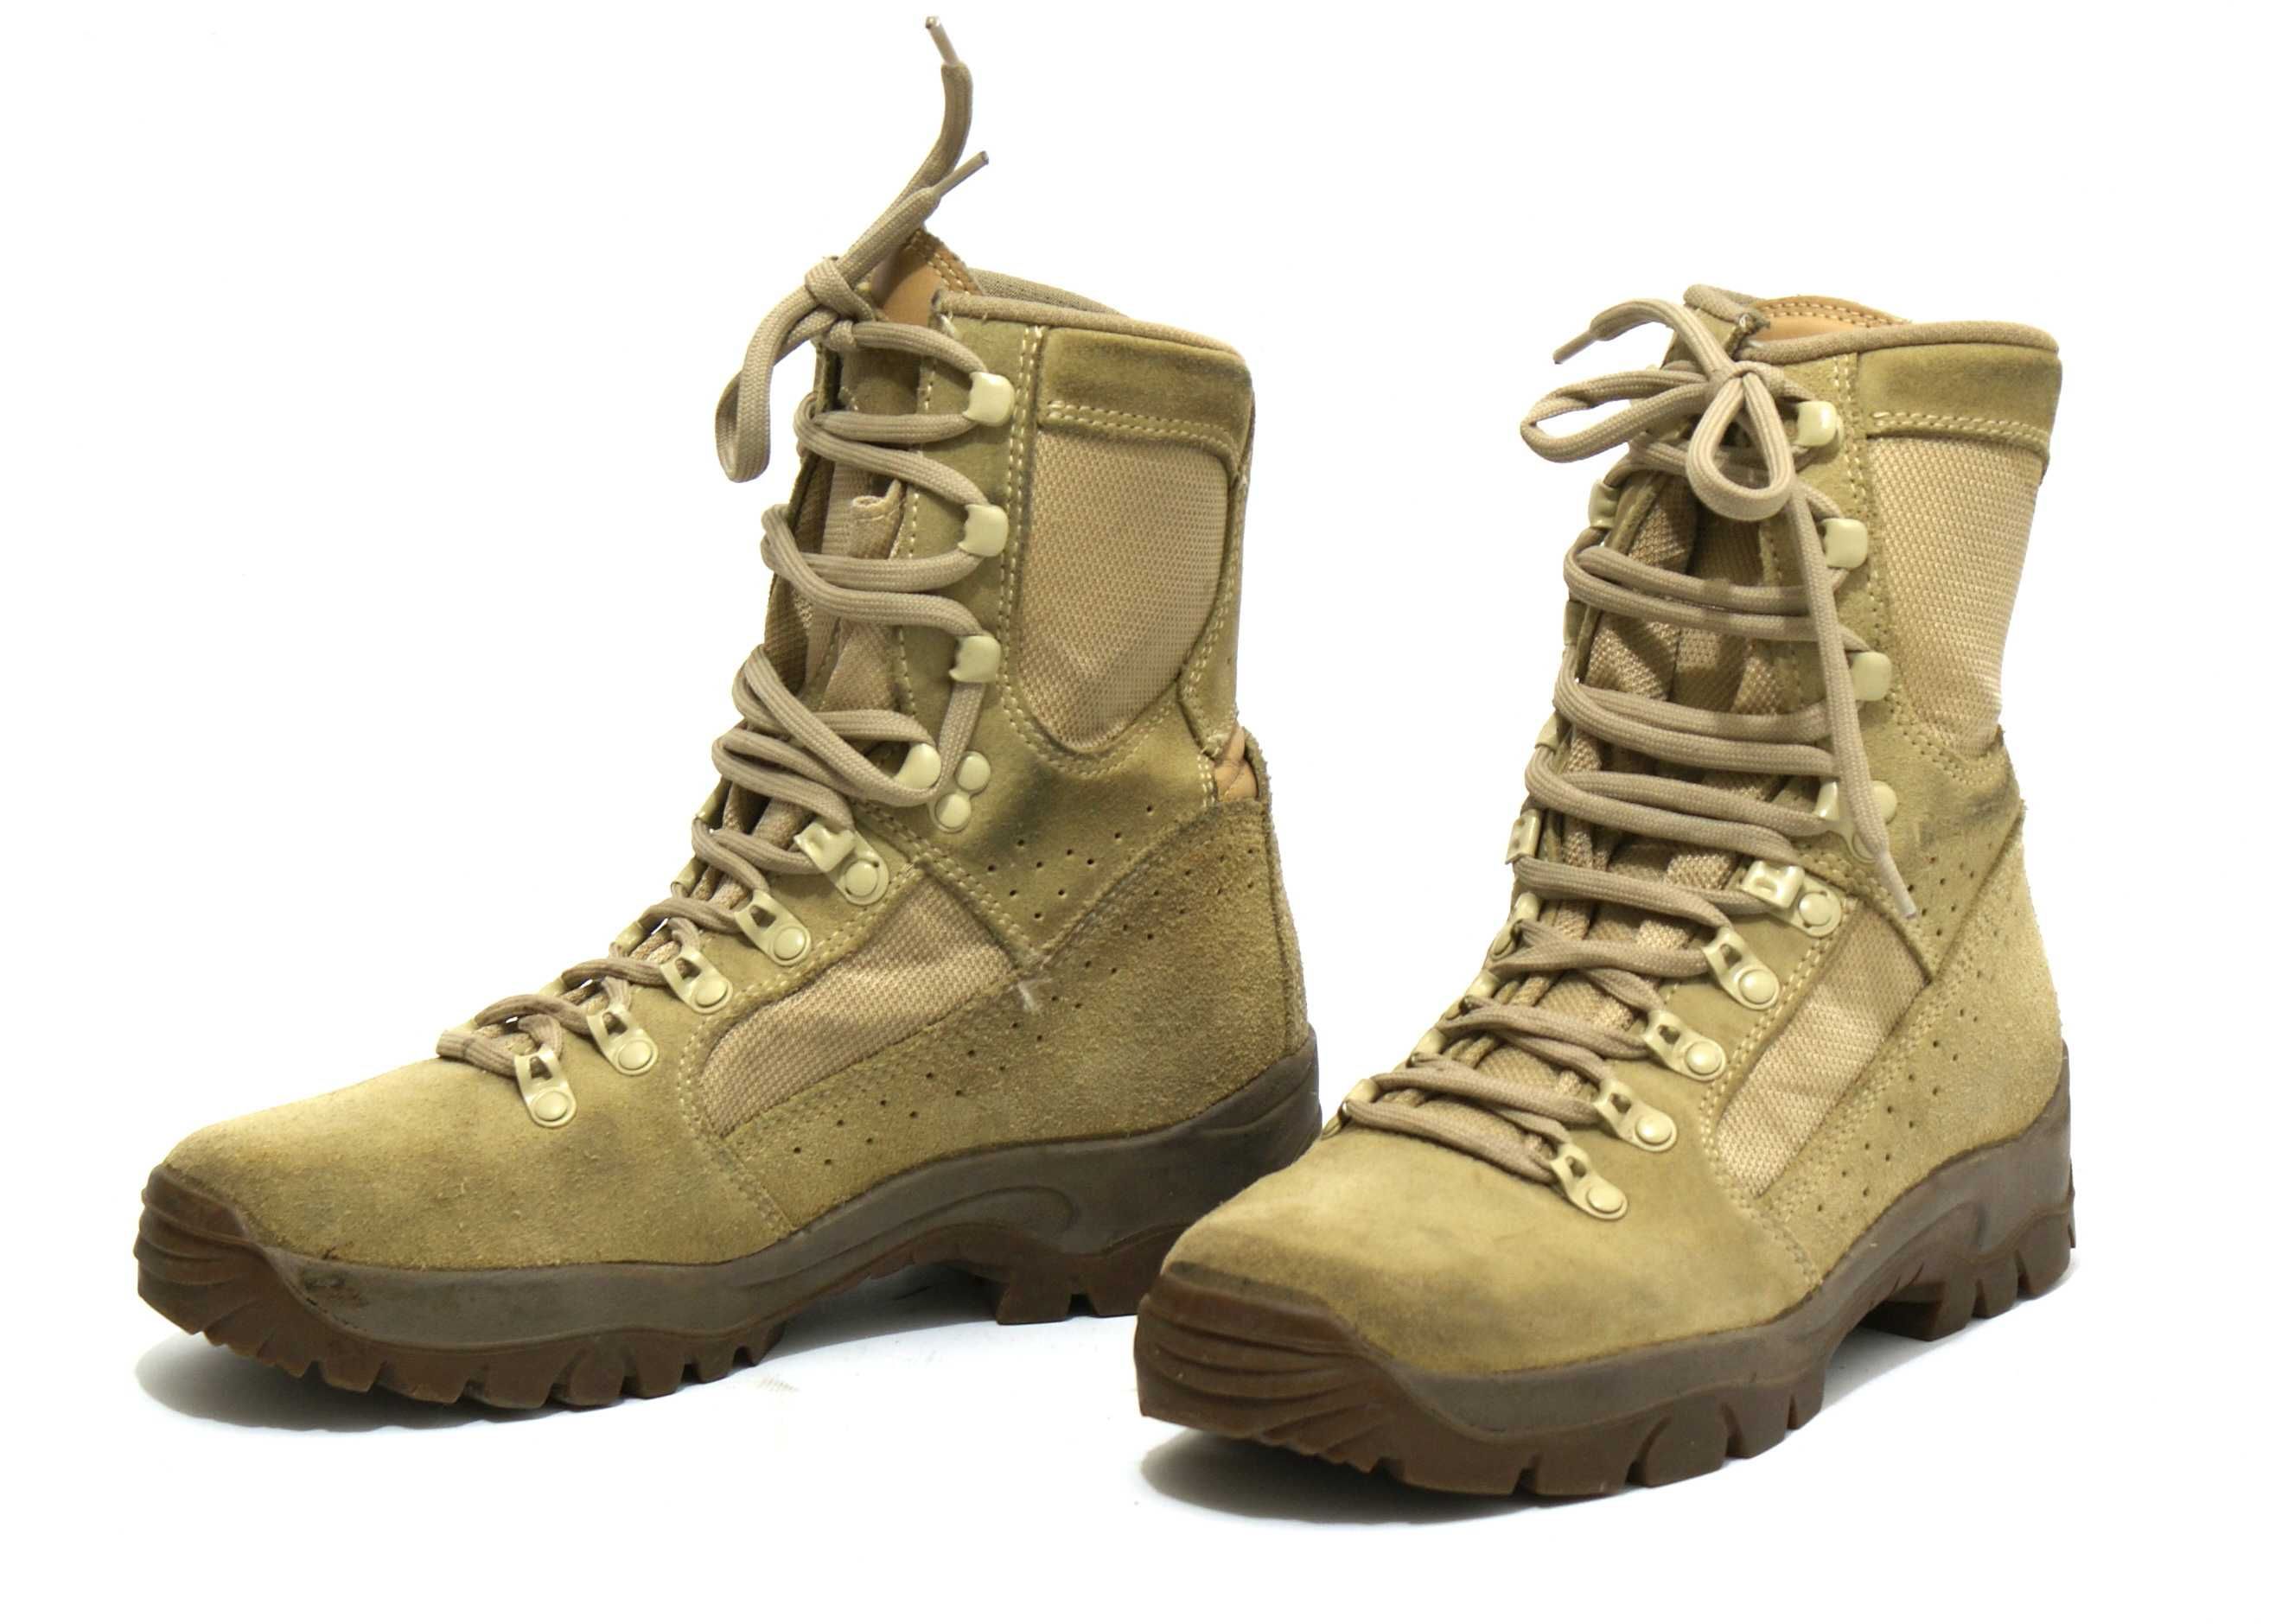 Meindl buty wojskowe kontrakt UK wysokie Desert Fox 38